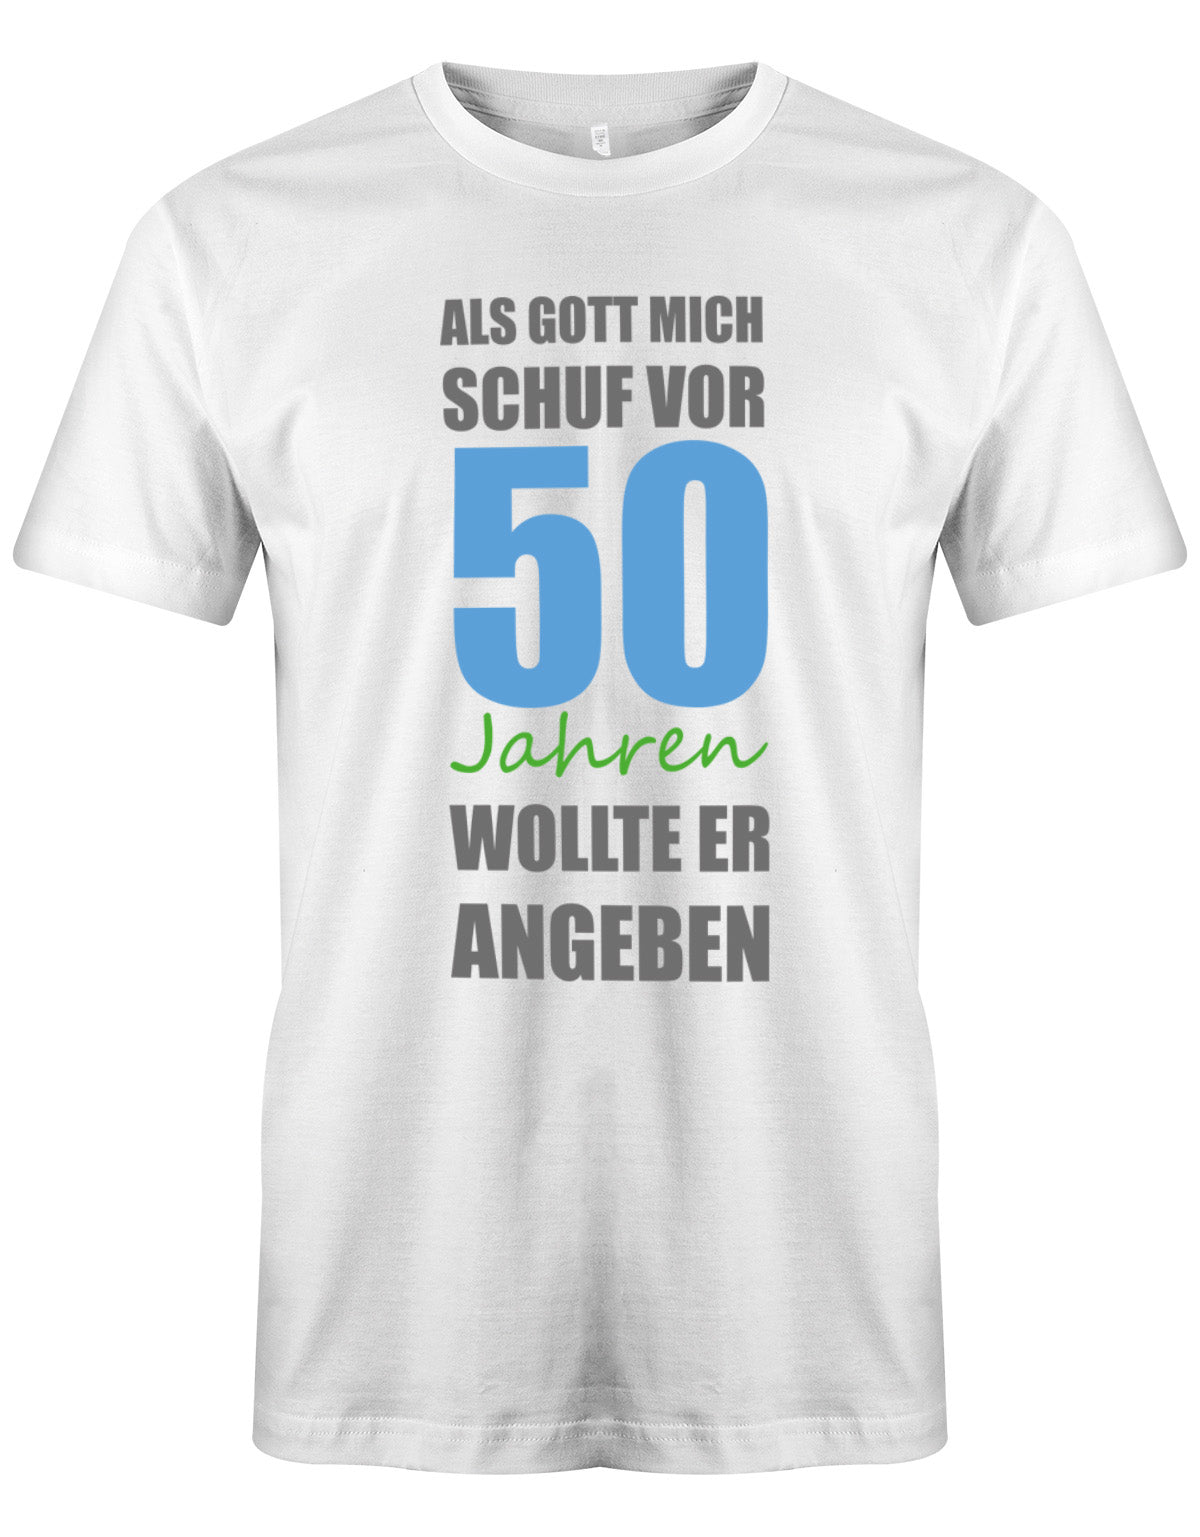 Lustiges Sprüche T-Shirt zum 50. Geburtstag für den Mann Bedruckt mit Als Gott mich schuf vor 50 Jahren wollte er angeben. Weiss